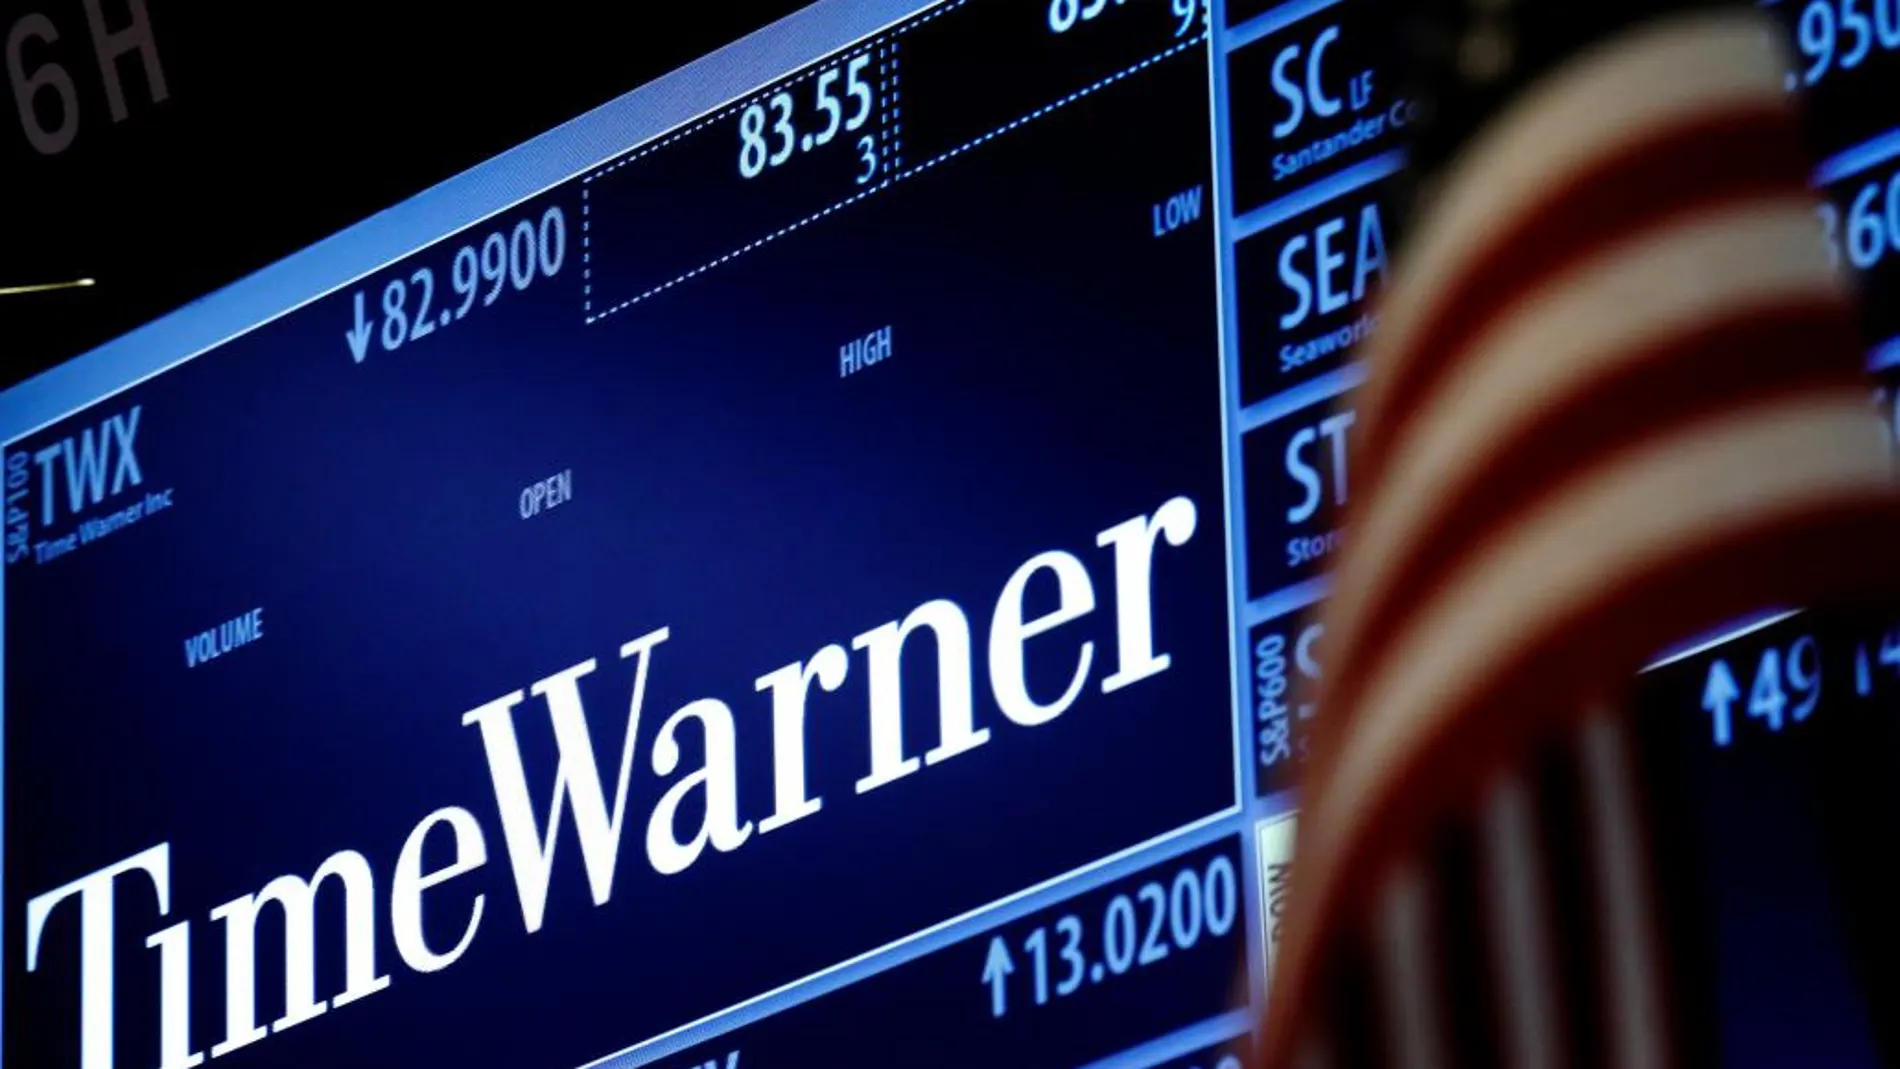 AT&T compra Time Warner por 85.000 millones de dólares, la mayor operación de este año